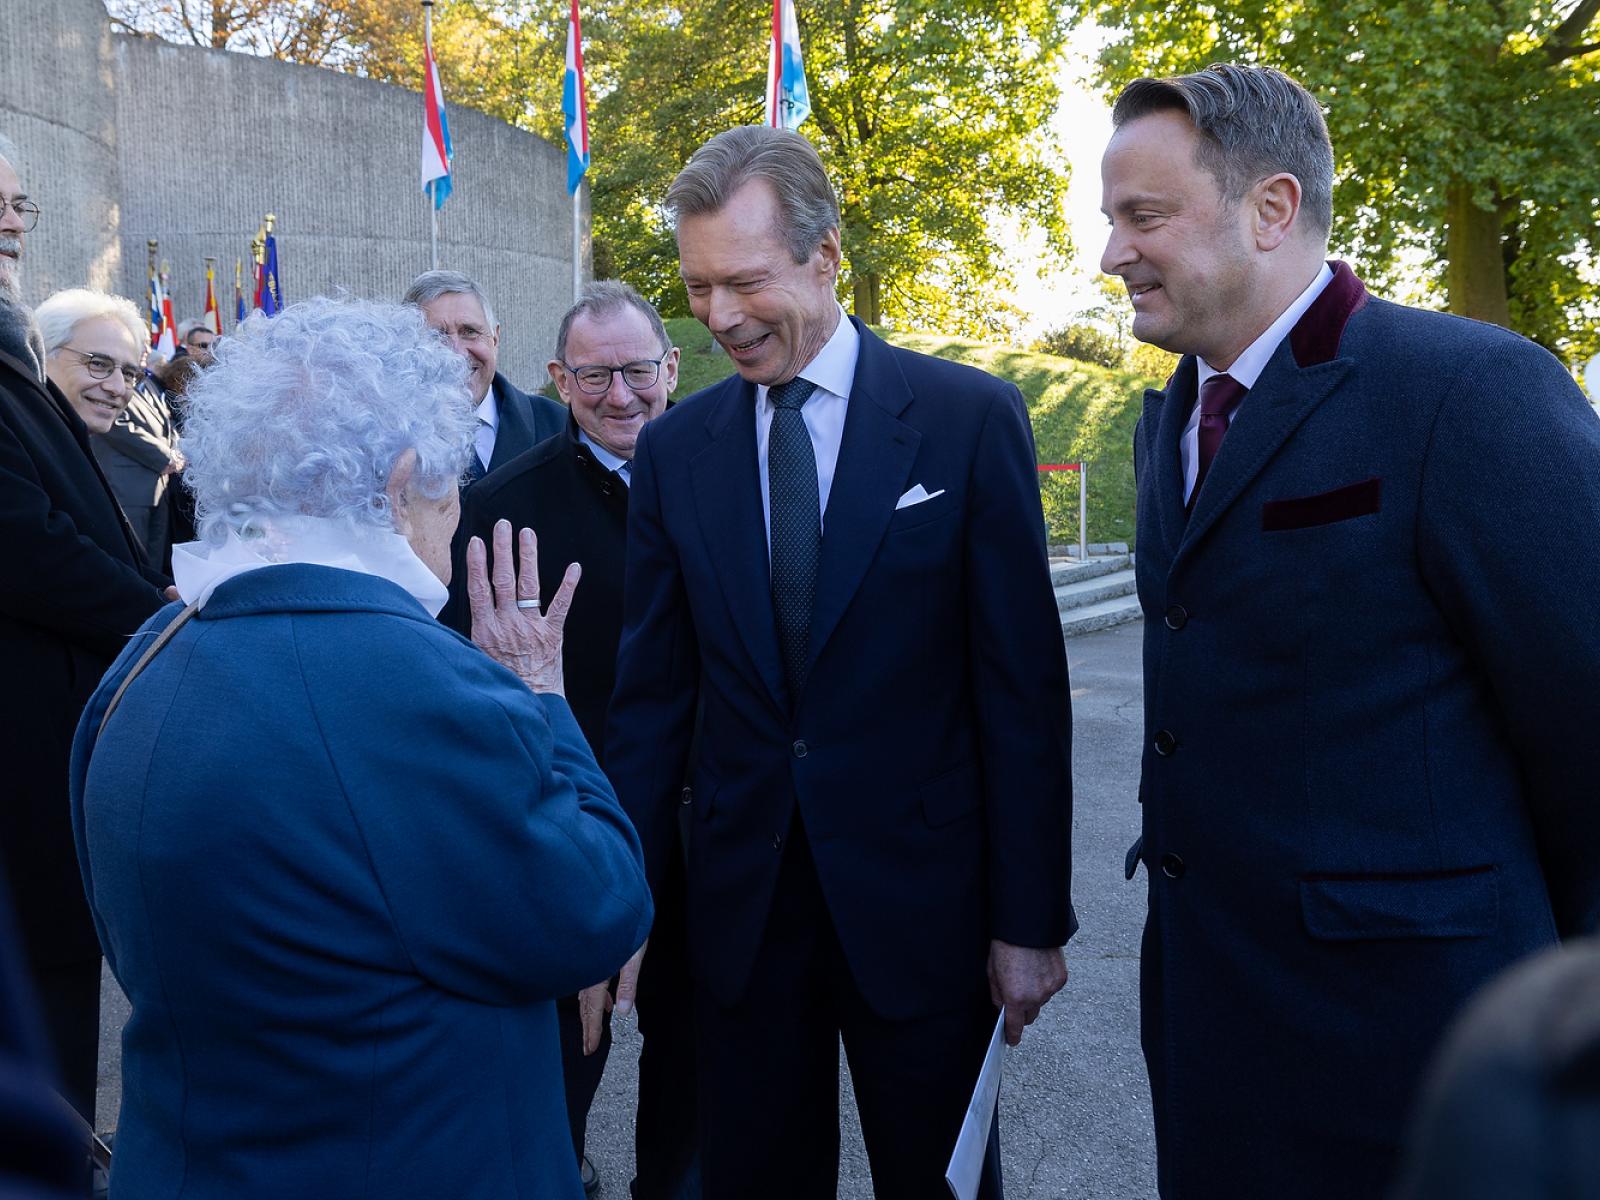 Le Grand-Duc salue les porte-drapeaux, les membres du Comité pour la mémoire de la 2e Guerre Mondiale, les représentants des mouvements et associations patriotiques, le Corps diplomatique et les autorités luxembourgeoises.